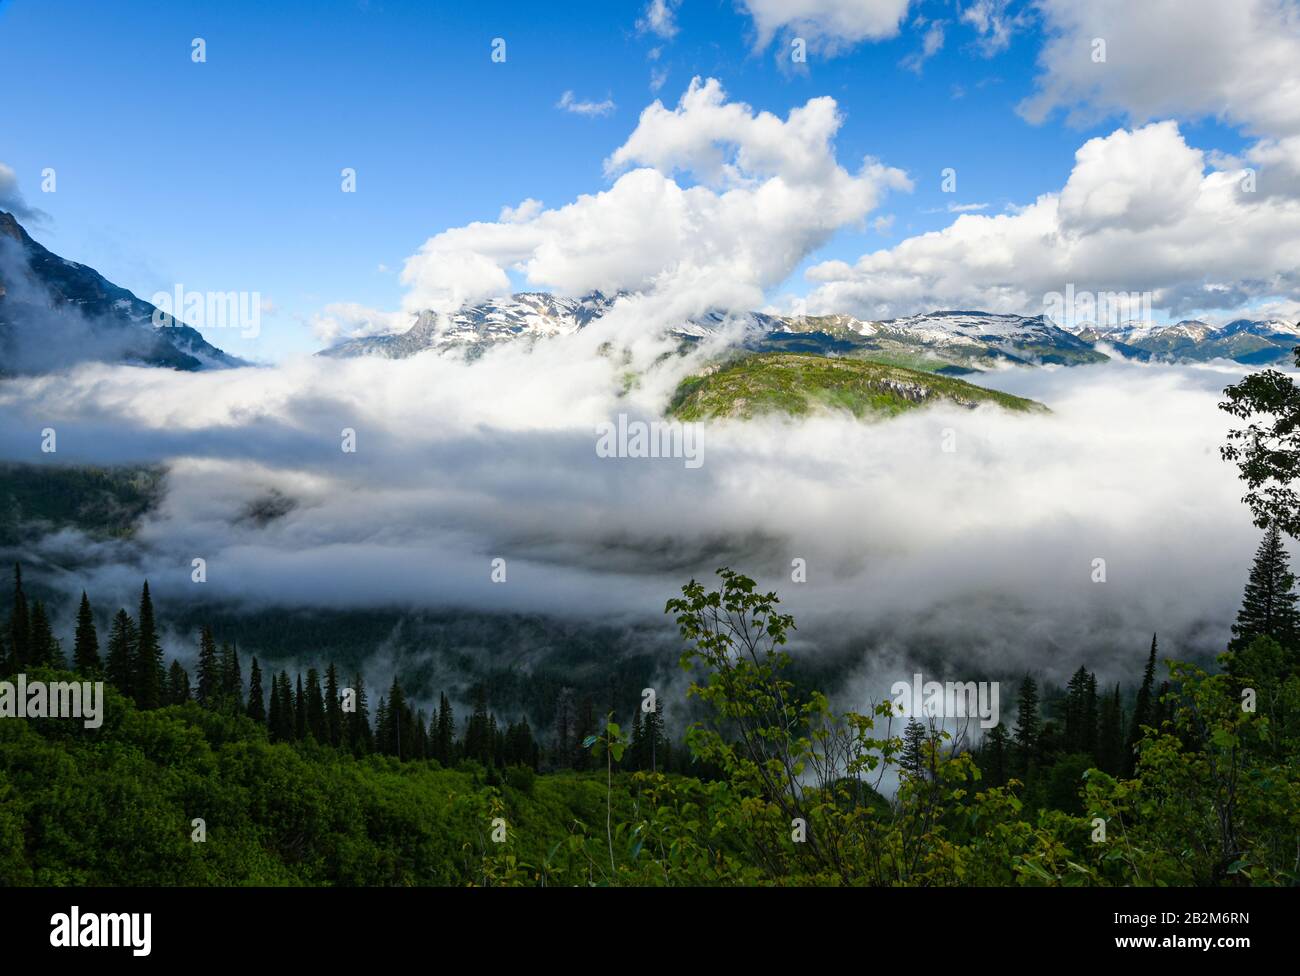 Nube baja iluminada por el sol, colgando sobre un valle en el Parque Nacional Glacier con bosques y picos montañosos distantes Foto de stock